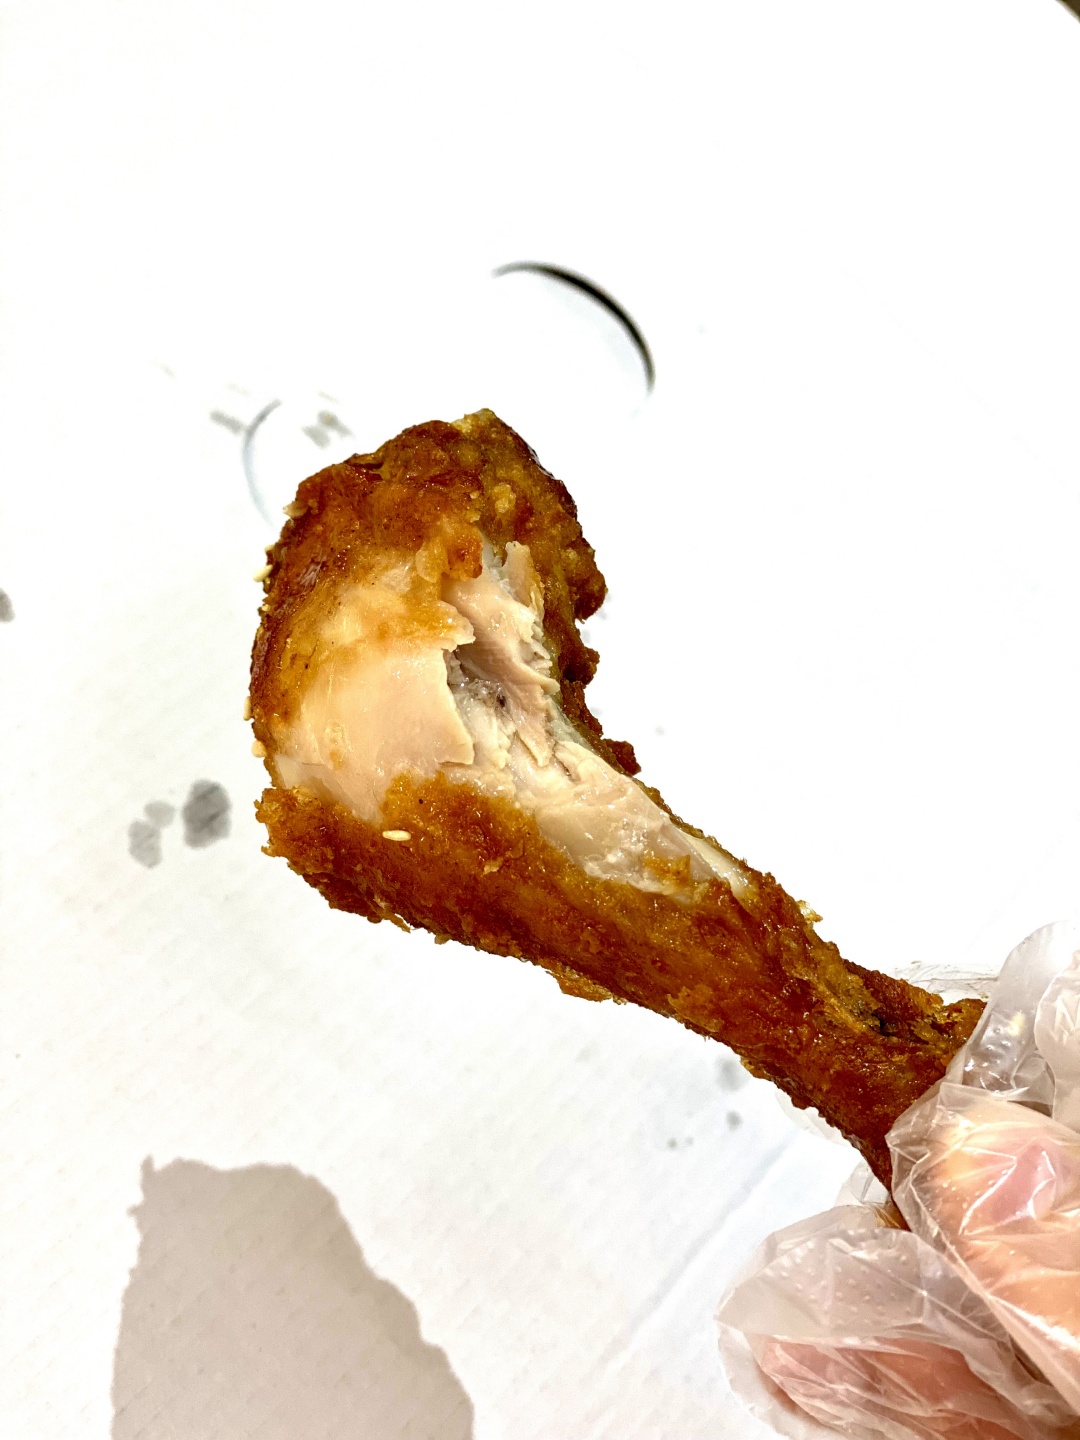 NeNe Chicken Taiwan：韓國知名連鎖炸雞店終於插旗台南啦!!! 不用飛韓國~台南就能吃到正統的韓式炸雞囉!/韓國第一大炸雞品牌/最新優惠活動